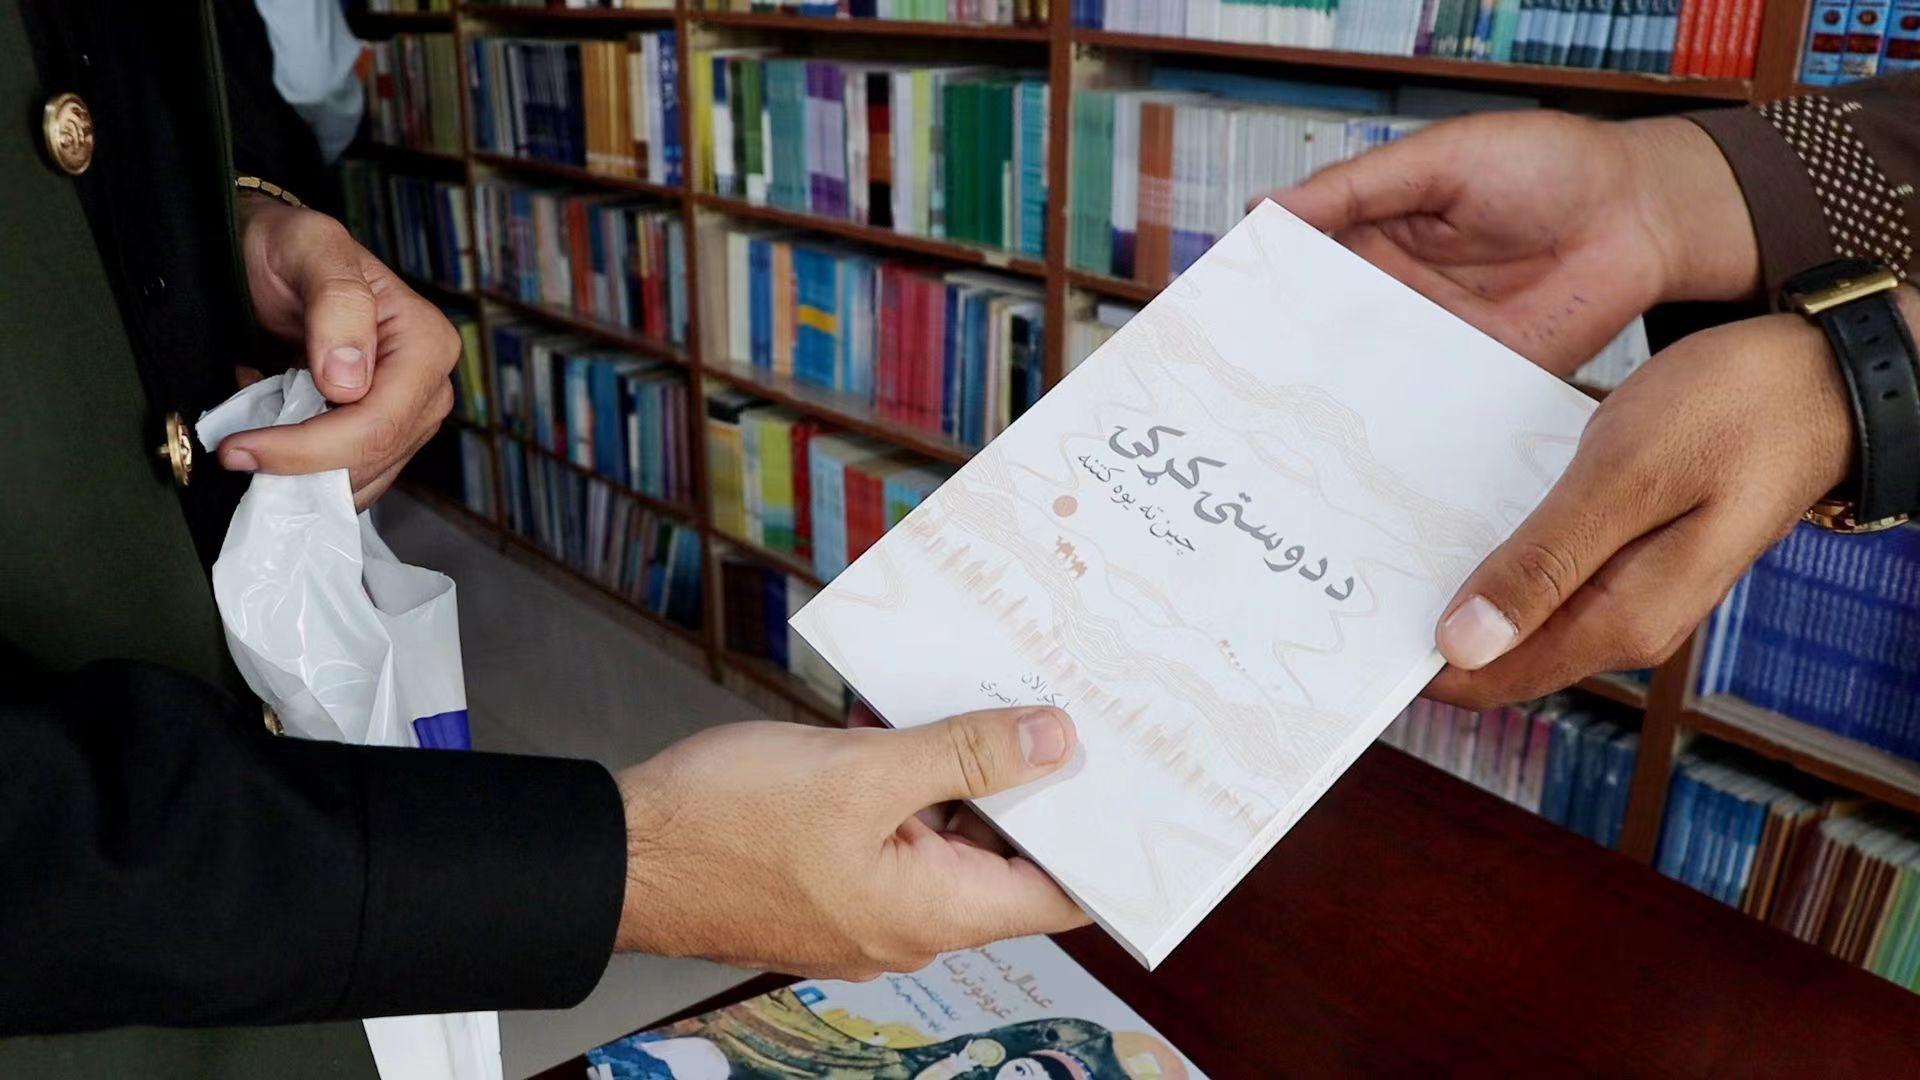 برگزاری سمپوزیوم انتشار کتاب «همراه با غوتی برای آشنایی با چین» در افغانستانا